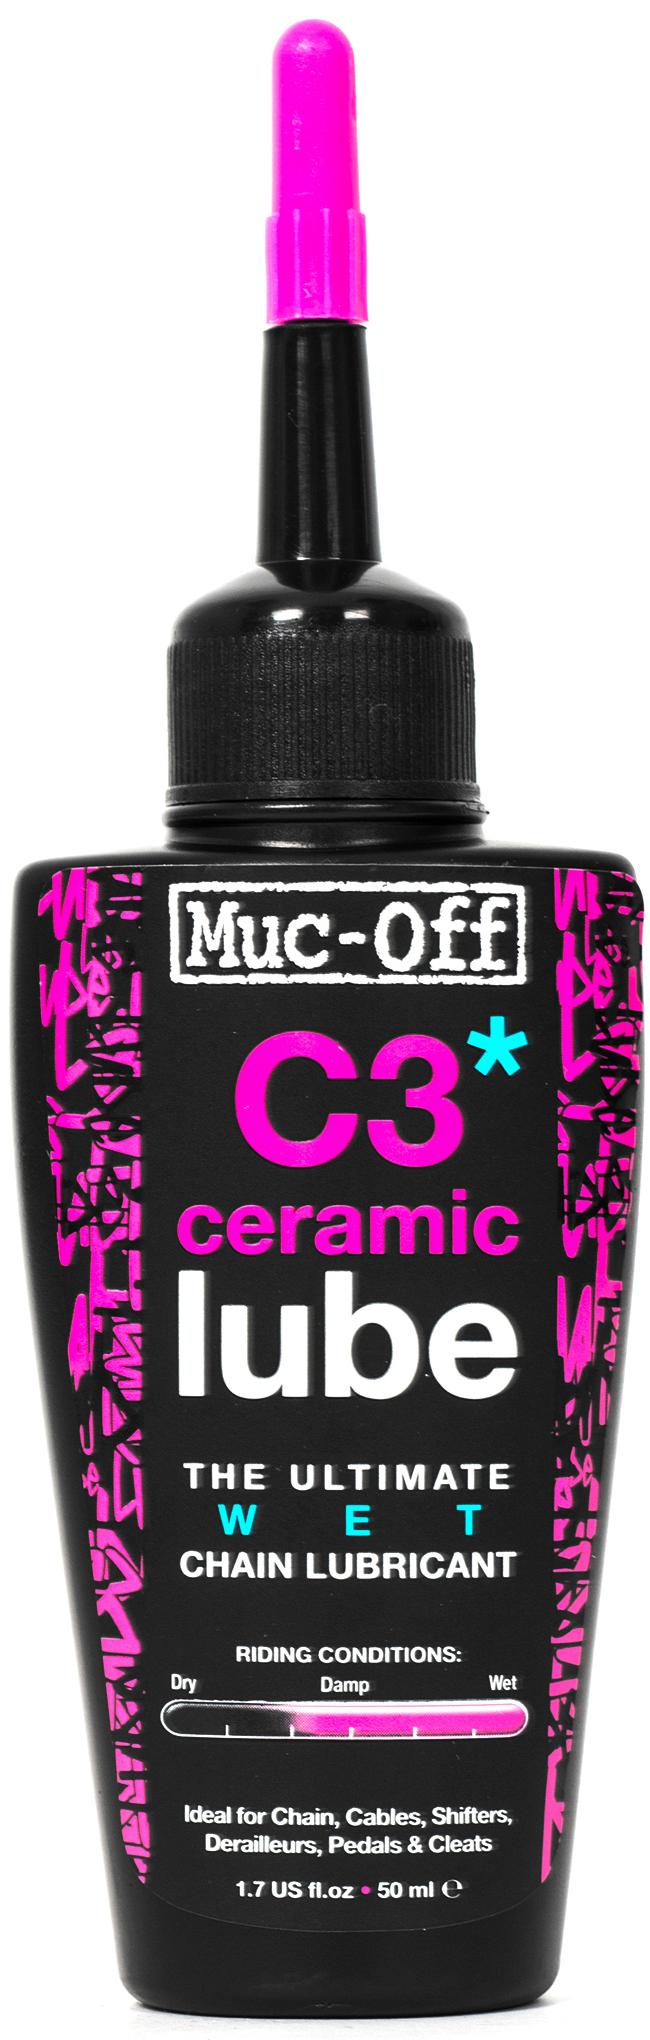 Muc-Off C3 Ceramic Wet Bike Lube, 50Ml